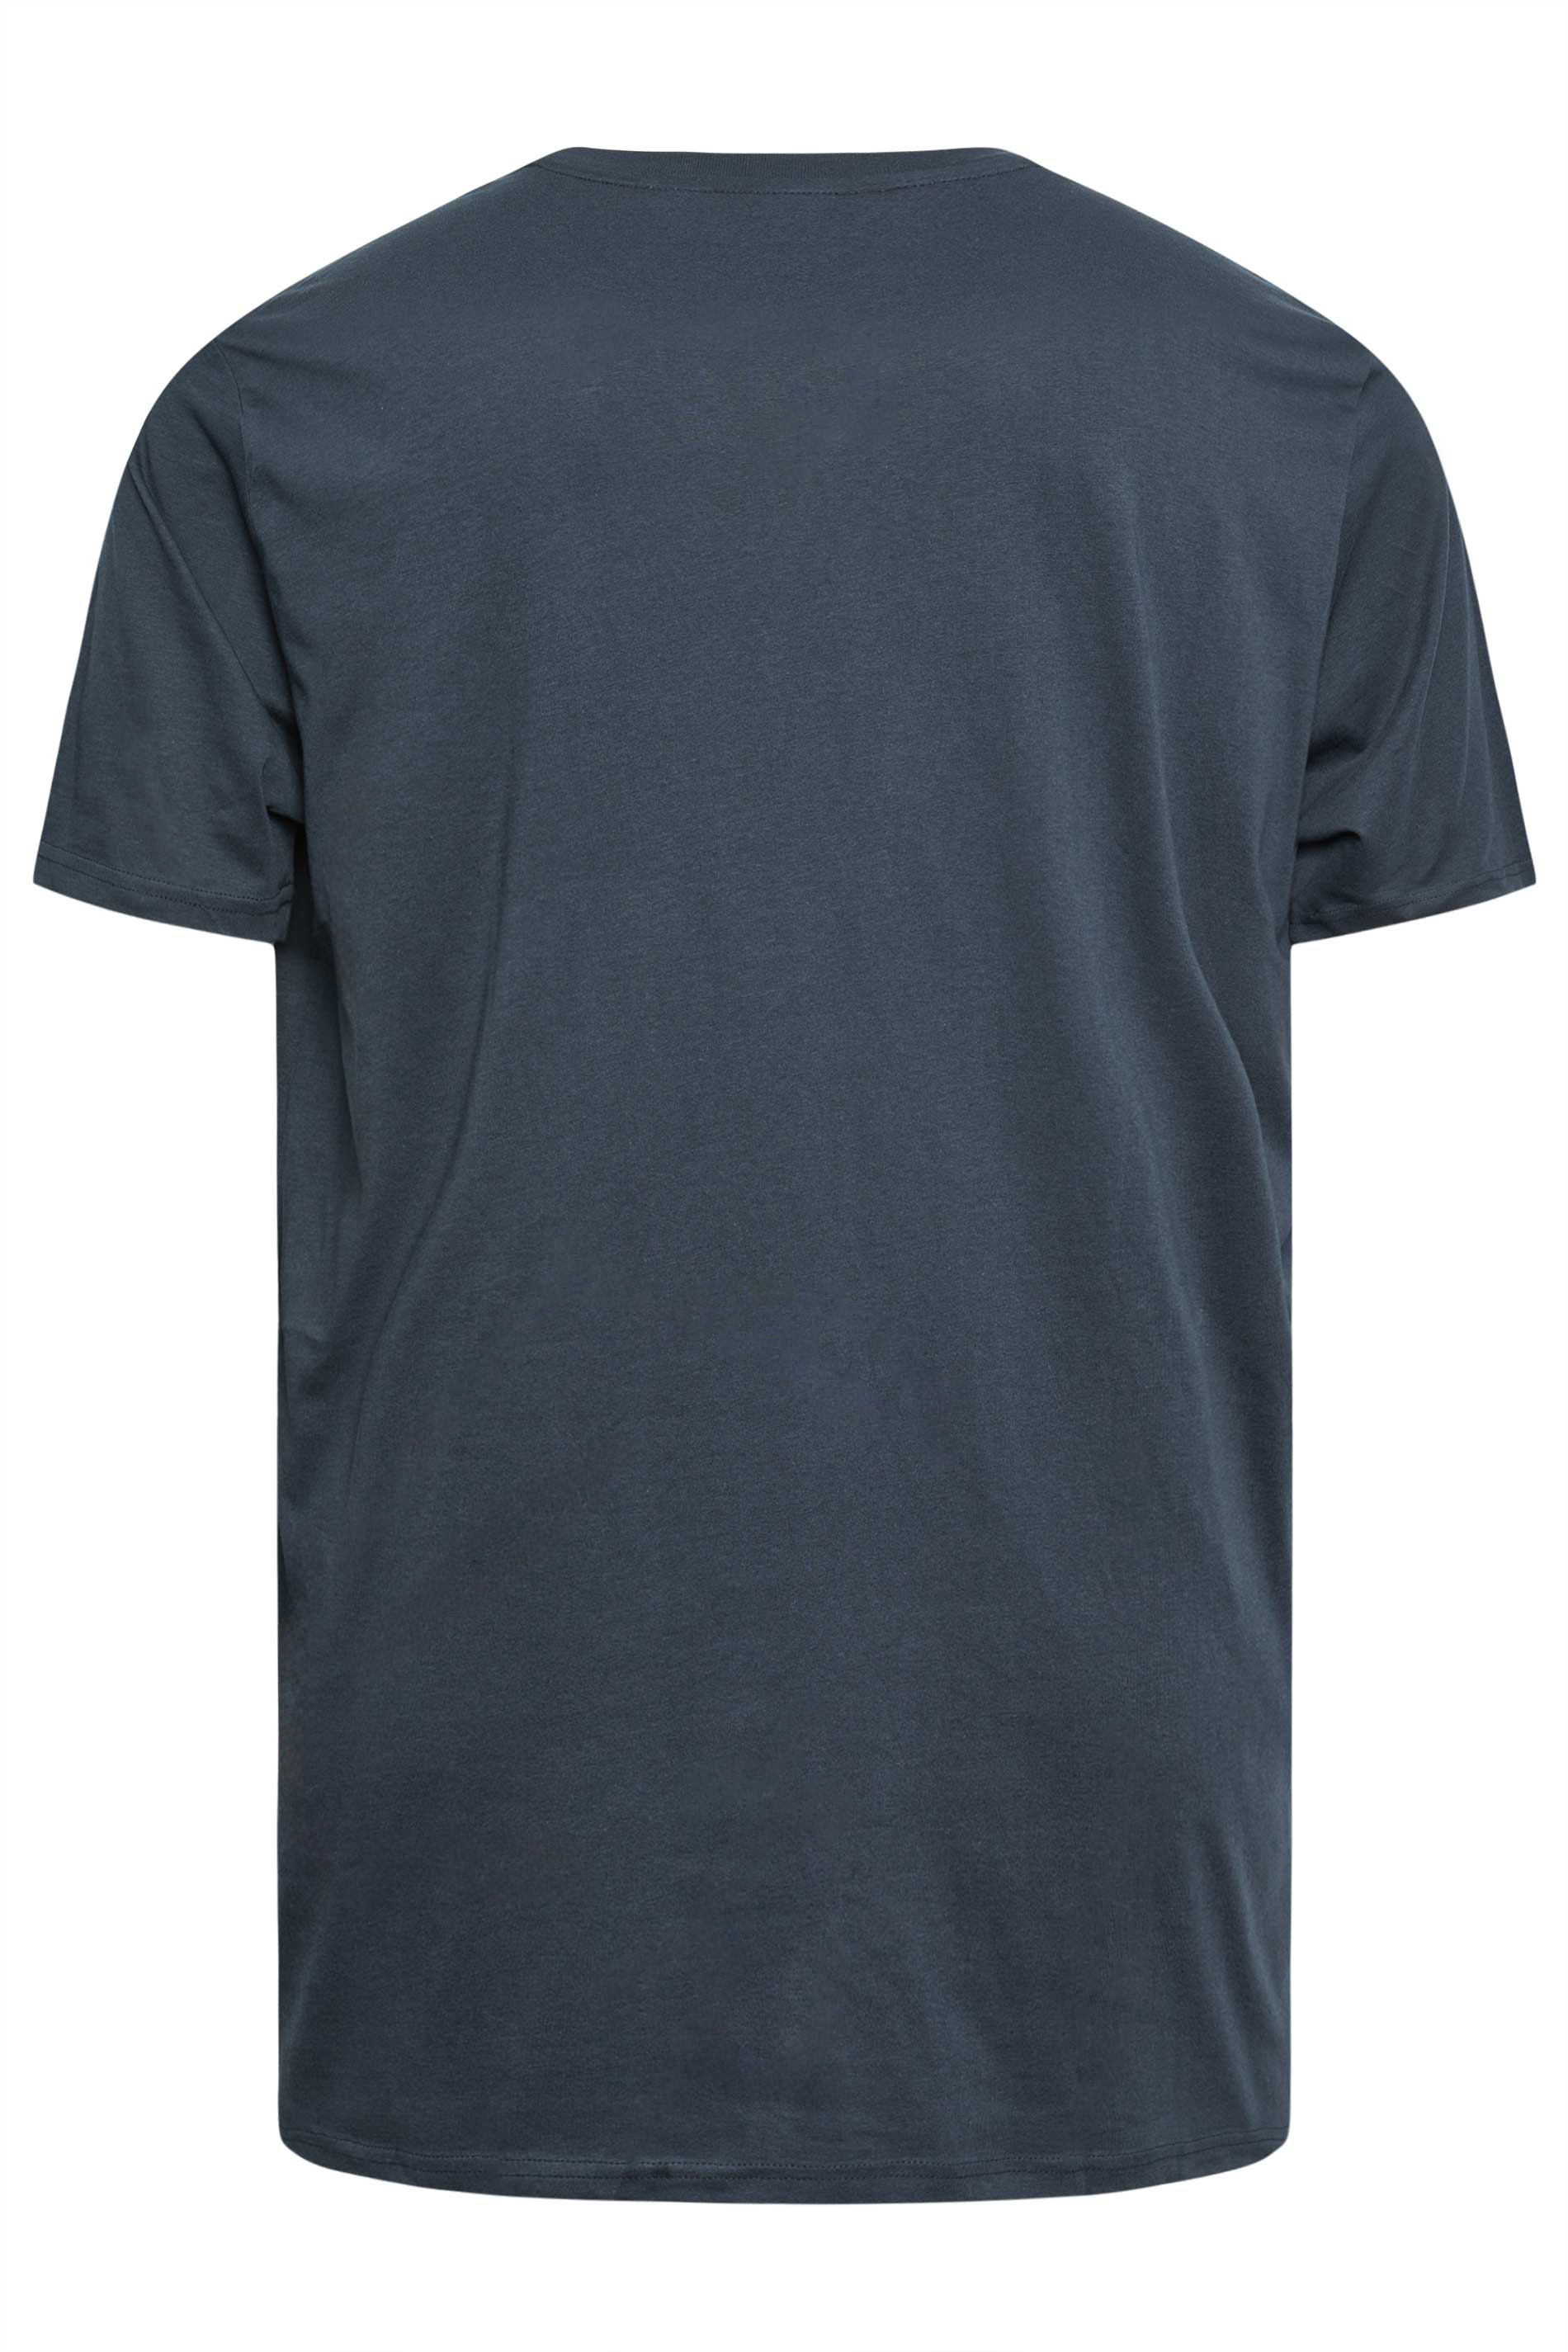 BEN SHERMAN Big & Tall Navy Blue Plectrum Print T-Shirt | BadRhino 3